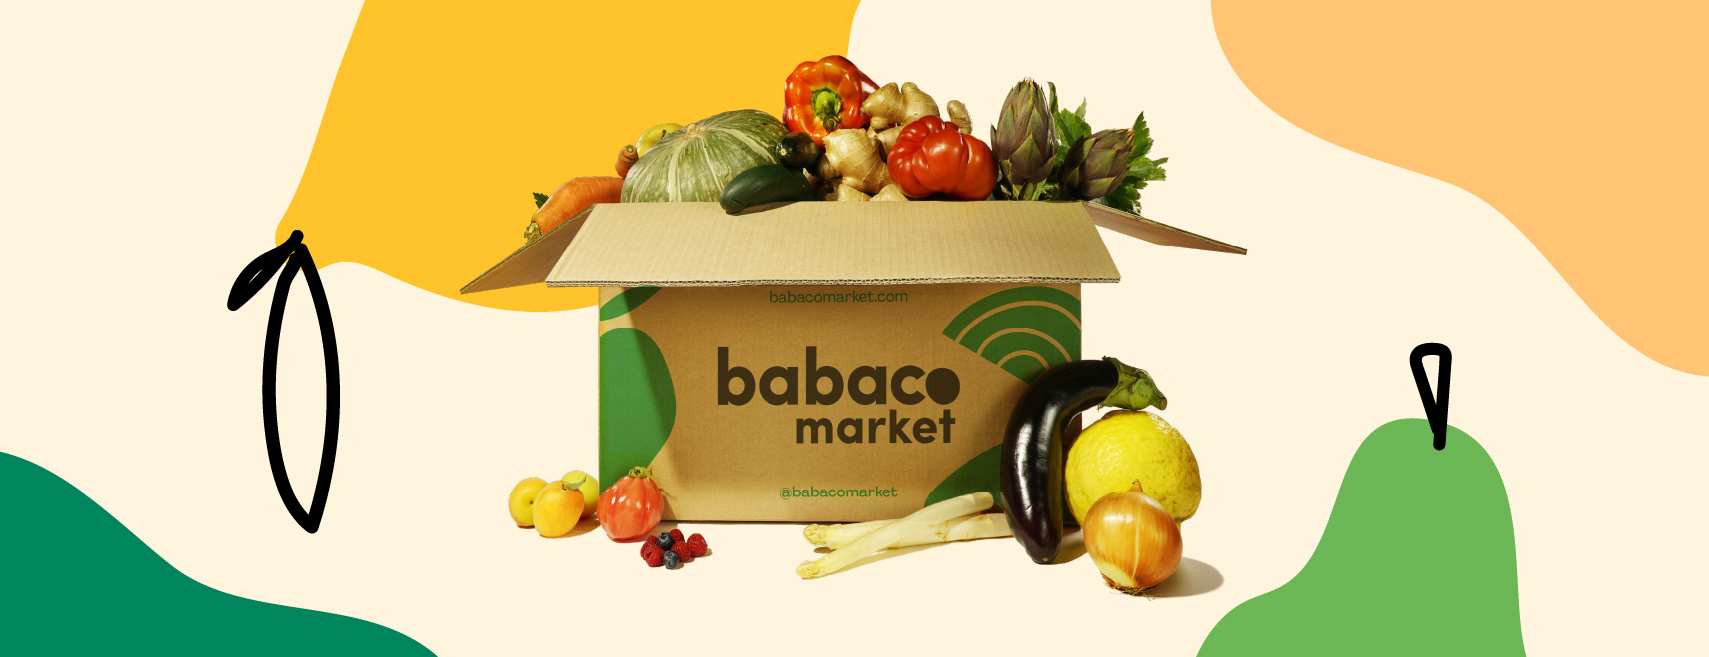 Babaco Market: la start-up italiana che consegna frutta e verdura a rischio spreco